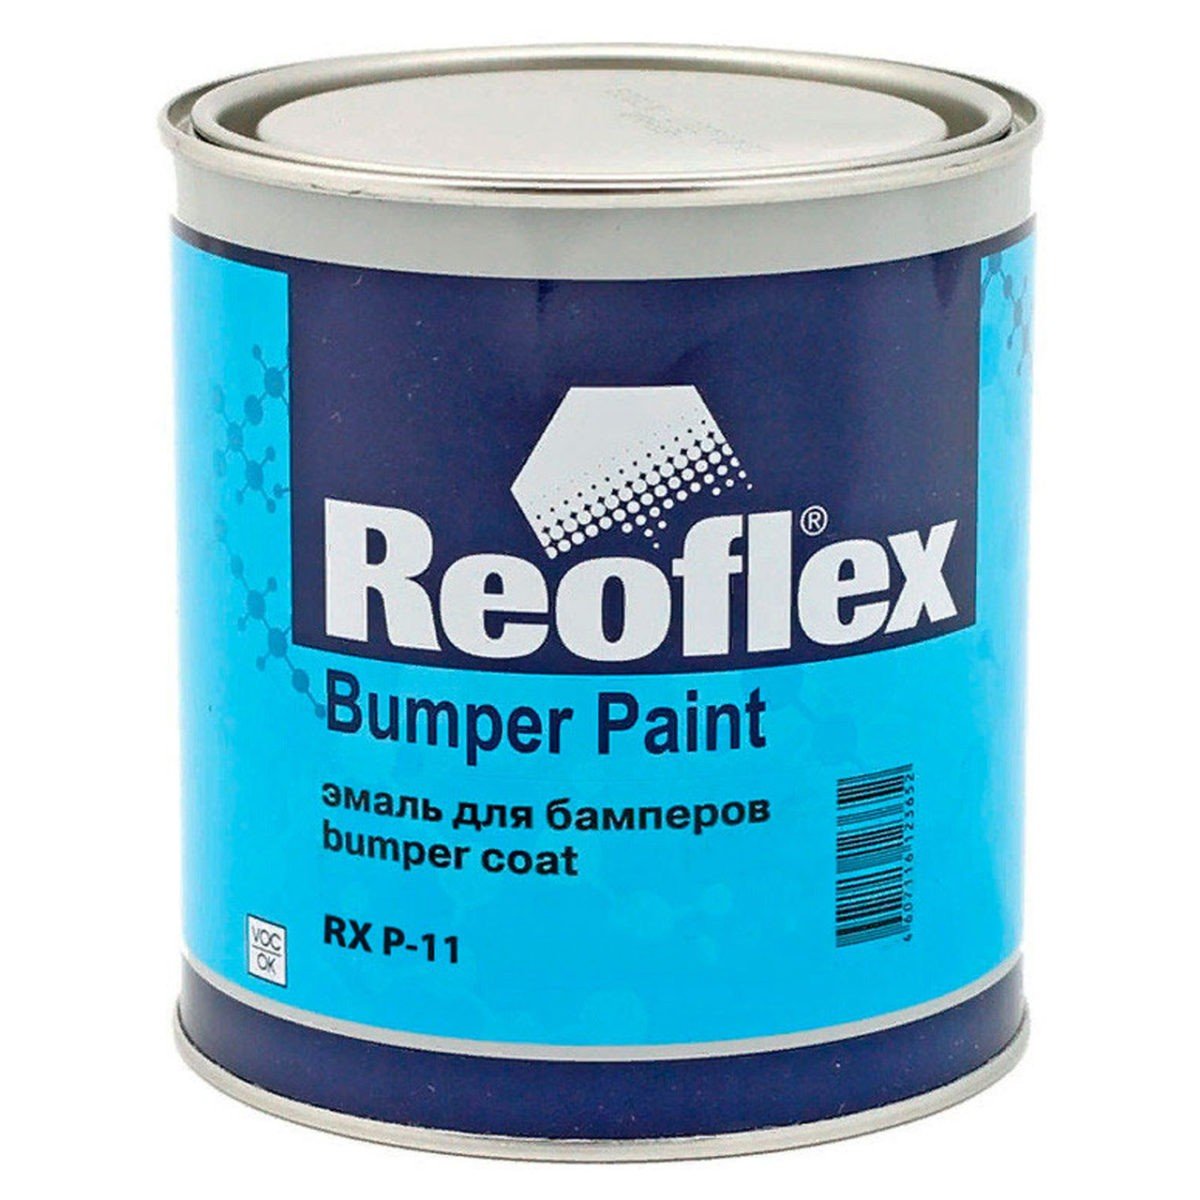 Reoflex Bumper Paint RX-p11